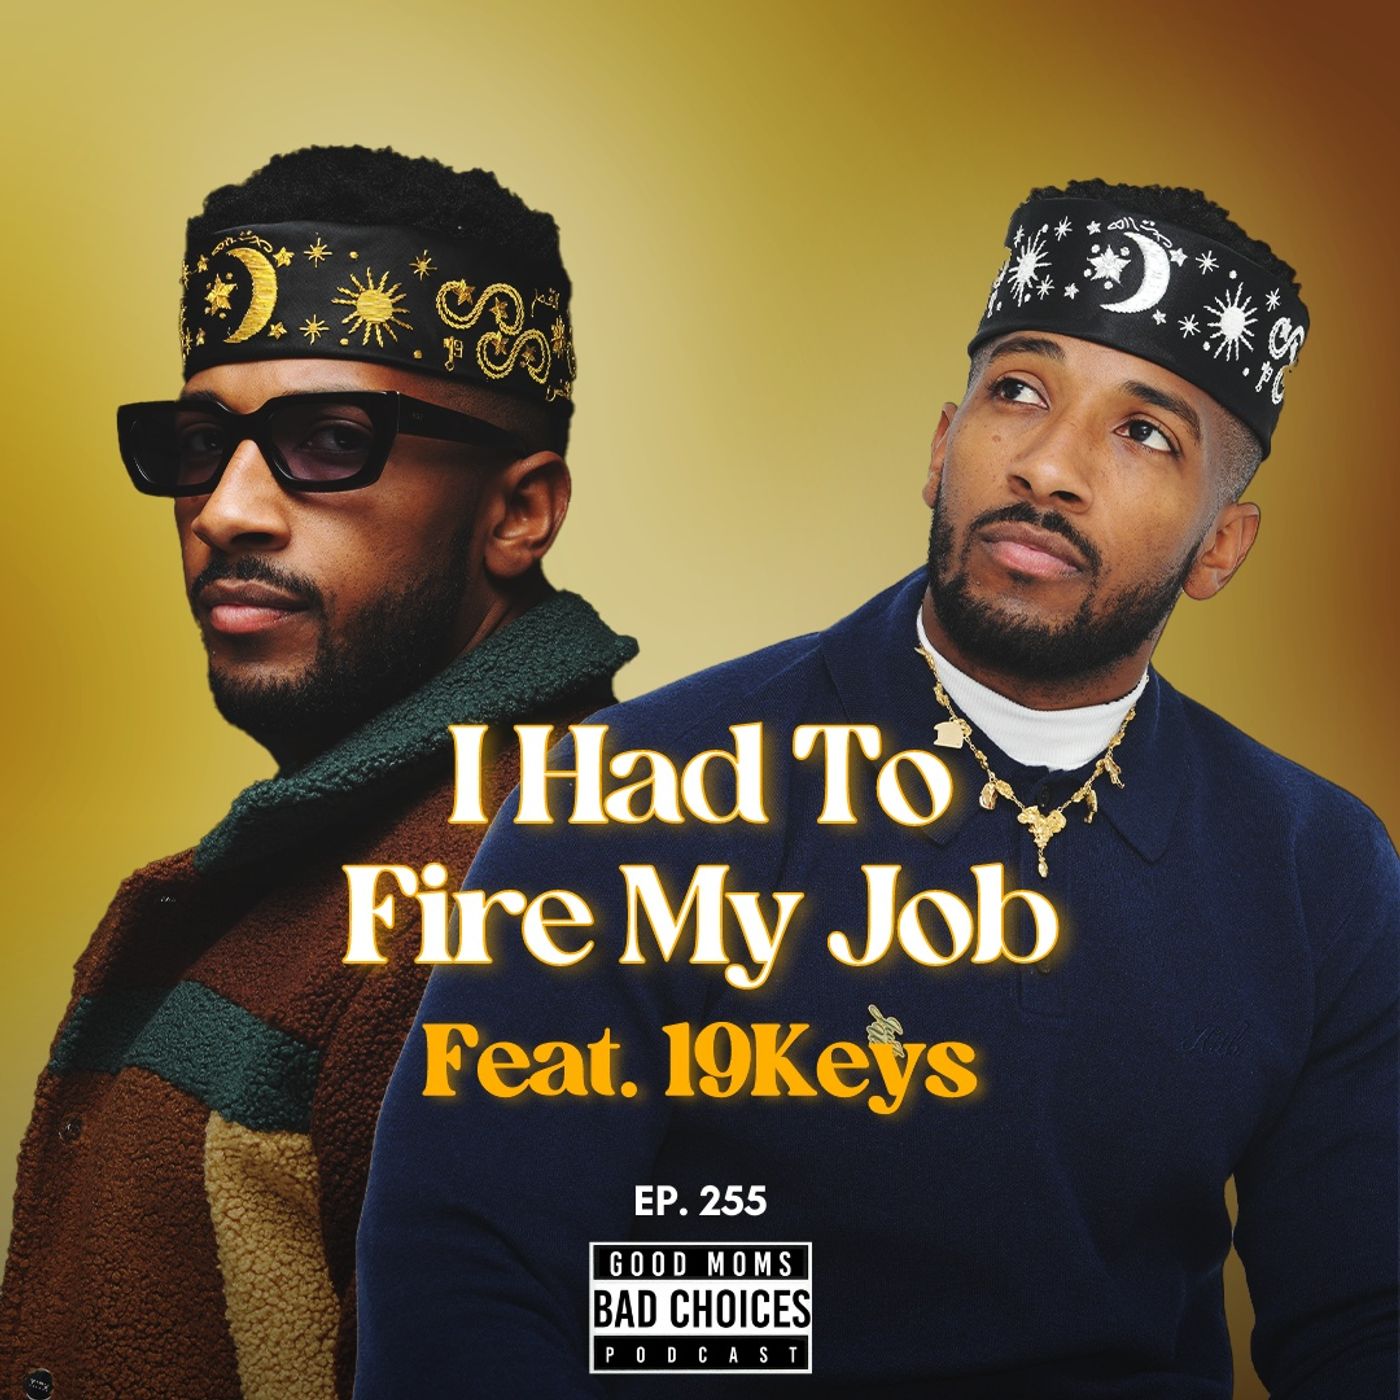 I Had To Fire My Job Feat. 19 Keys